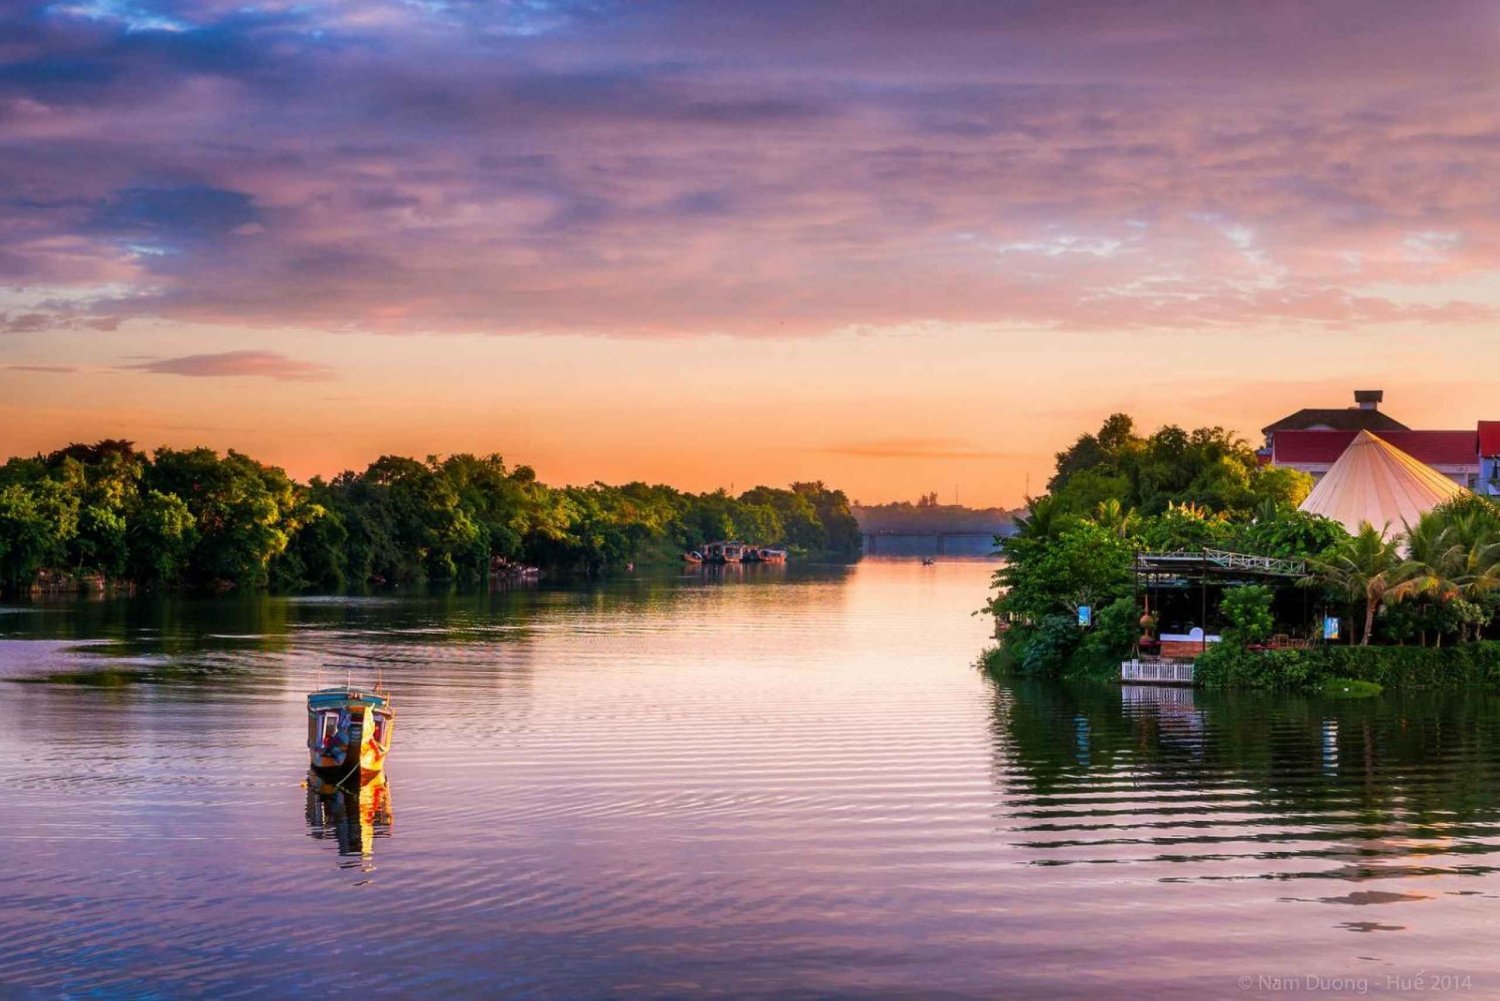 Tonalità: crociera al tramonto lungo il fiume dei profumi